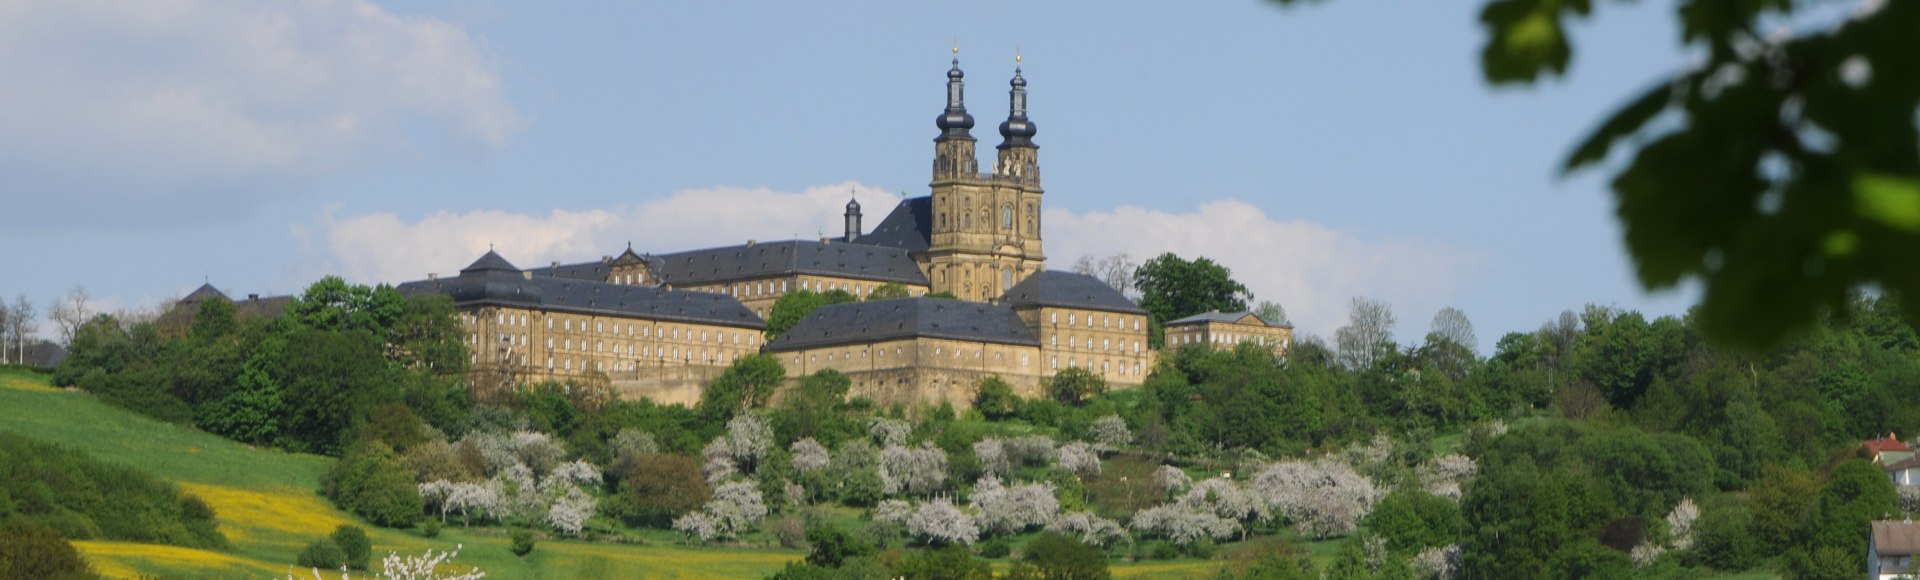 Das Kloster Banz in Bad Staffelstein, © Kur &amp; Tourismus Service Bad Staffelstein